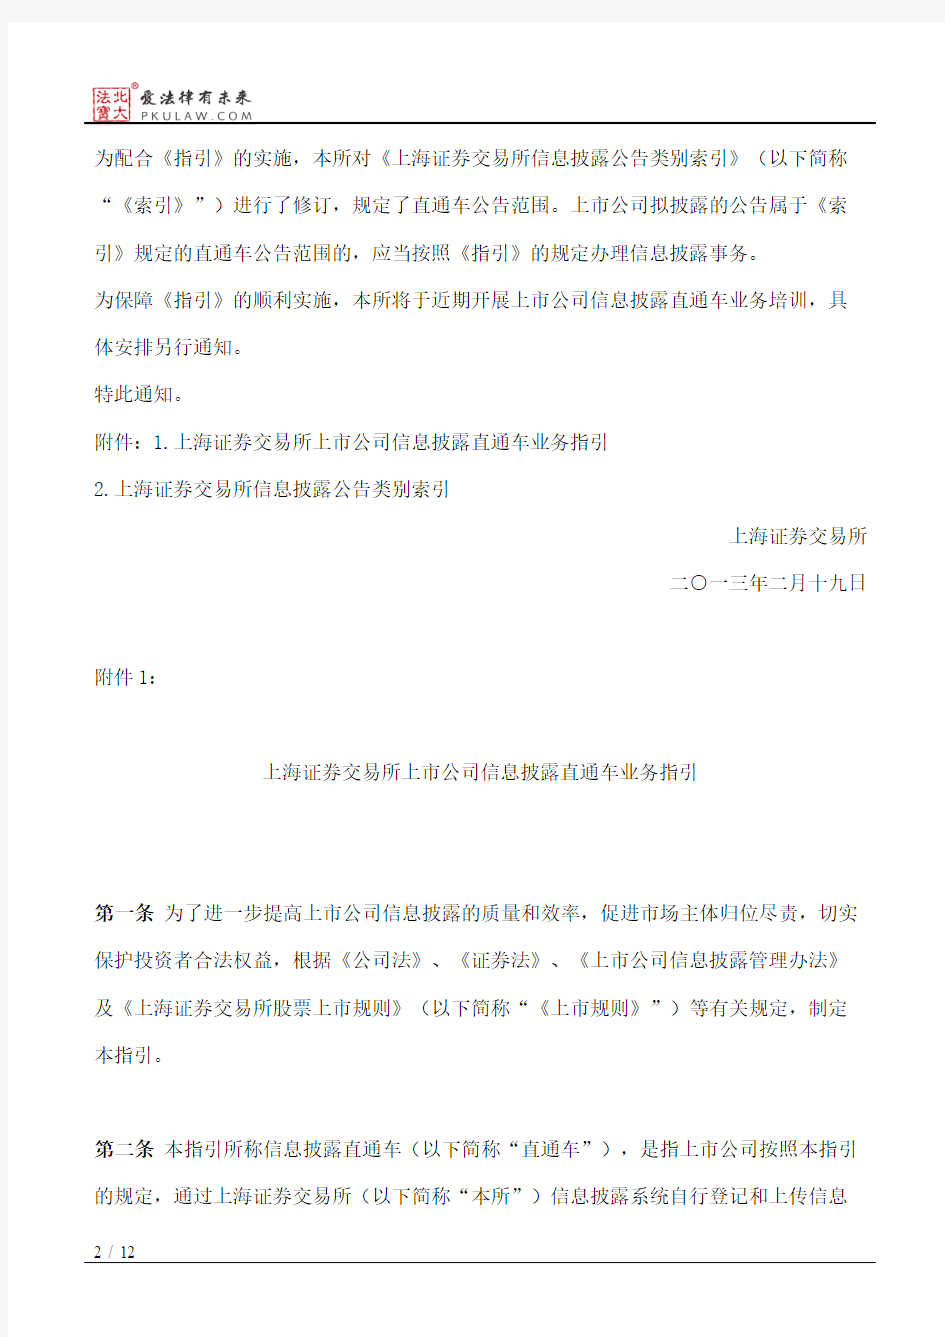 上海证券交易所关于发布《上海证券交易所上市公司信息披露直通车